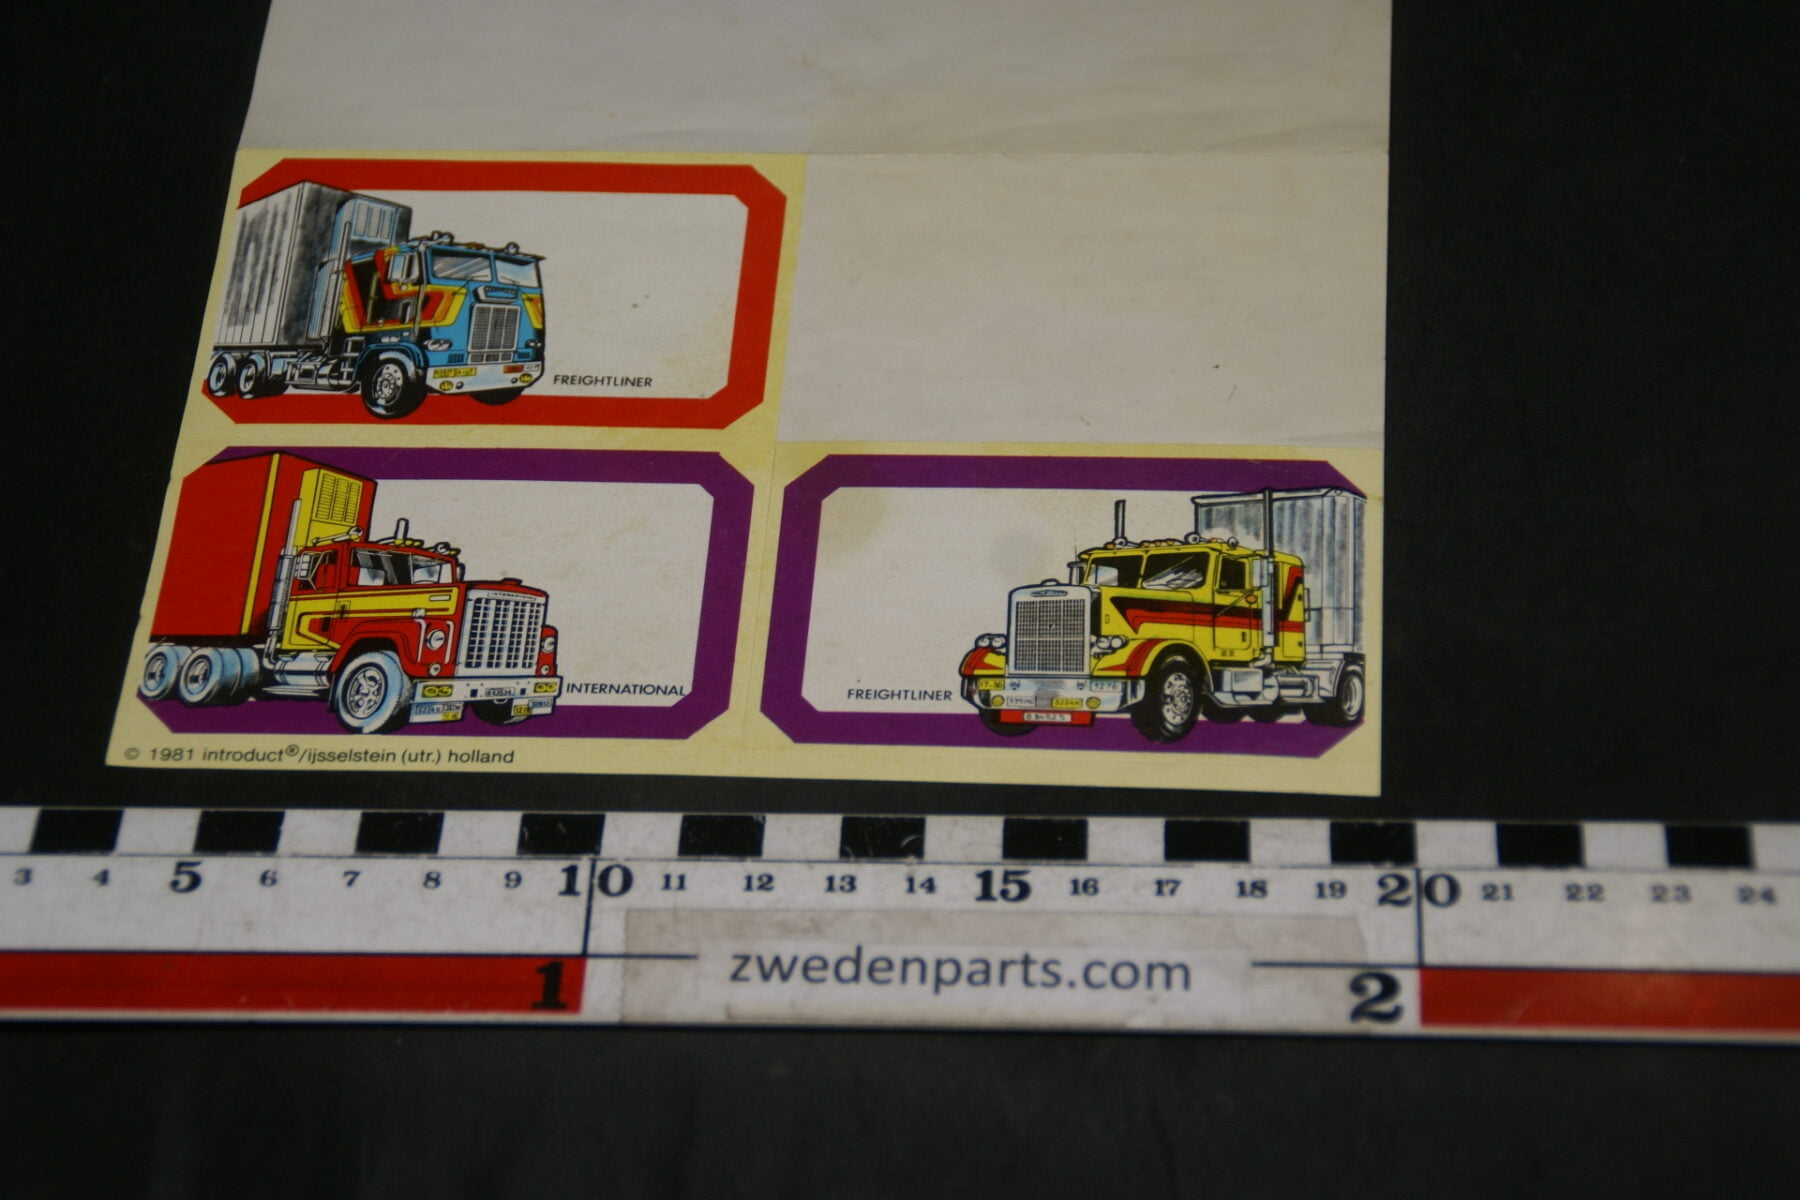 DSC02552 vel stickers etiketten met 4 vrachtwagens DAF Mack etc.-2236be37